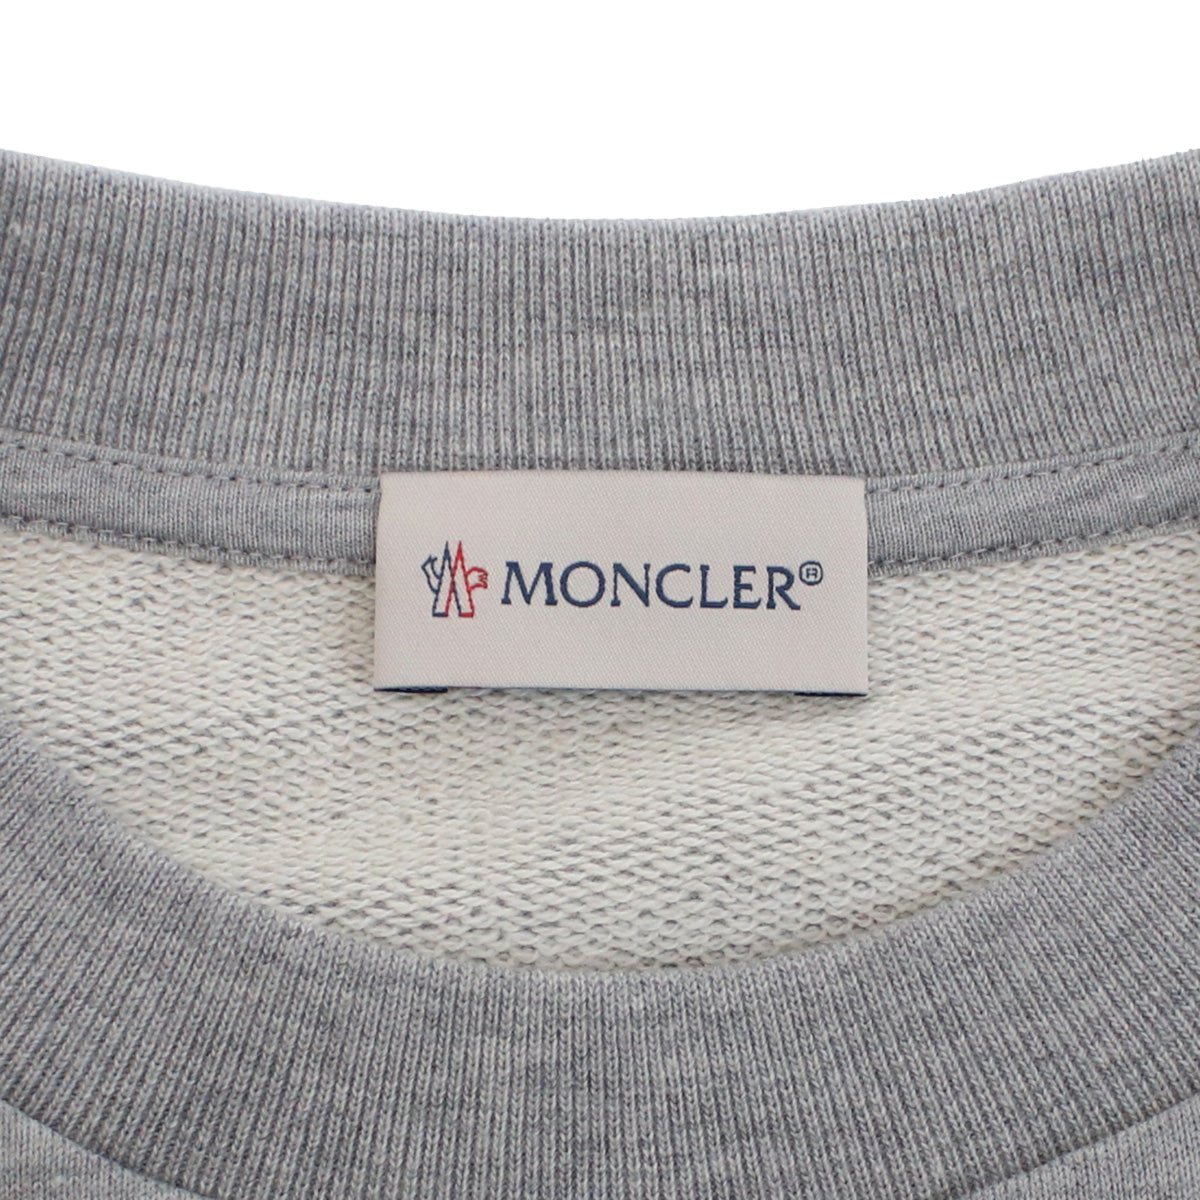 MONCLER モンクレール 8G00045 スウェット グレー系 メンズ